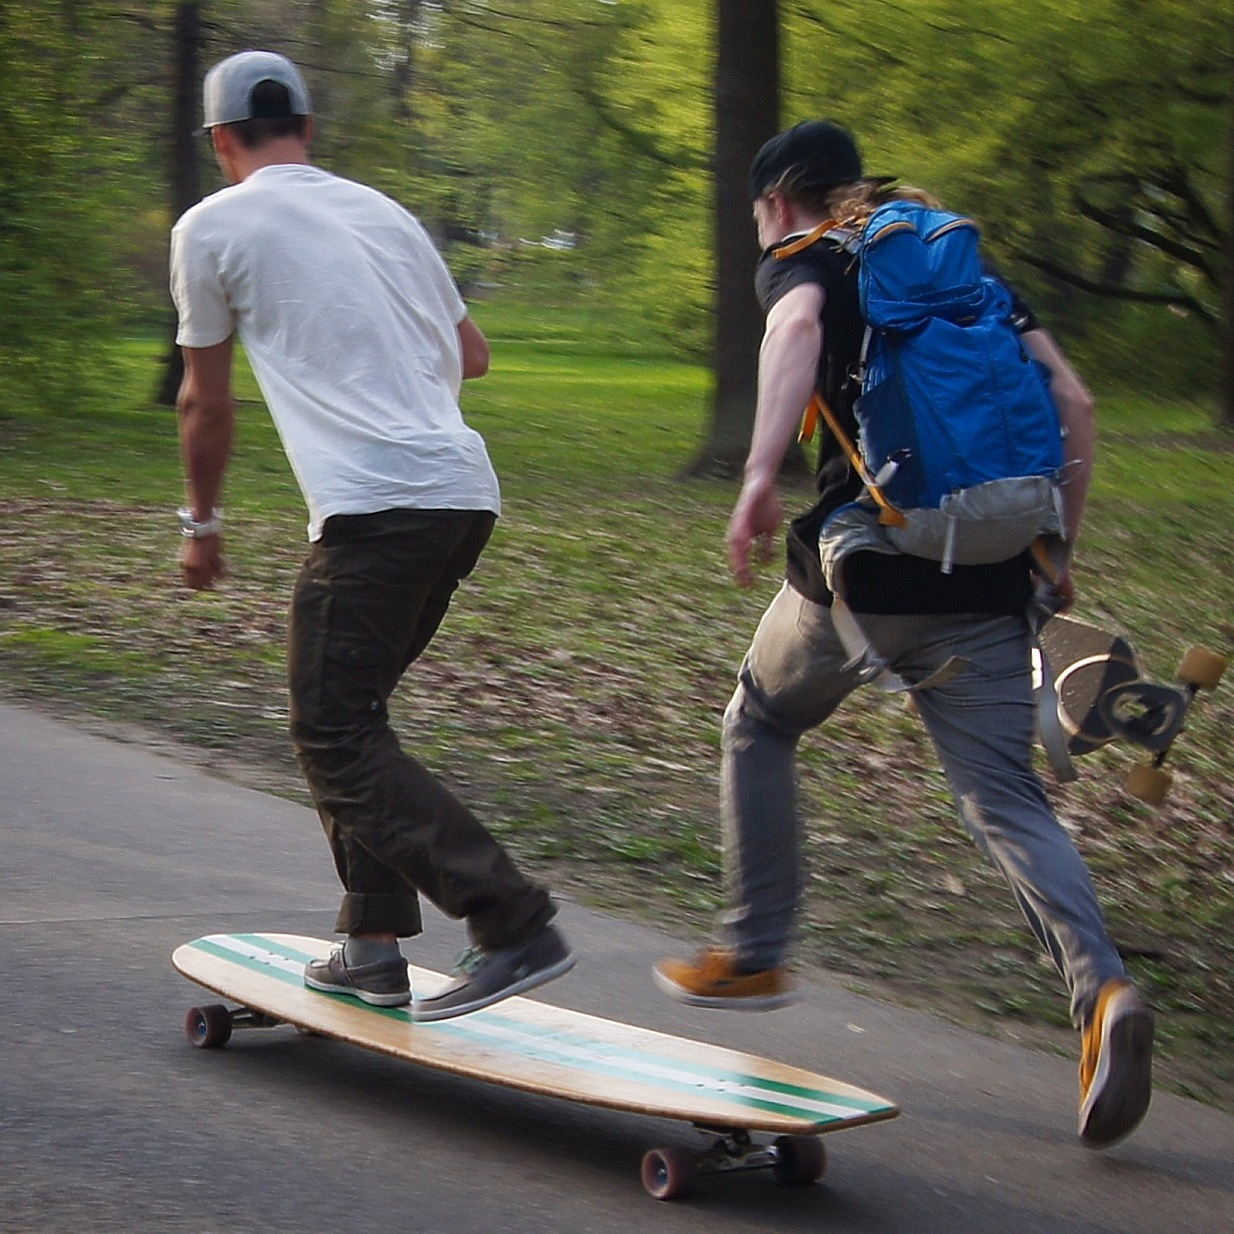 MEGA longboard - Longboard, Humor, Skateboarding, Skateboarder, 